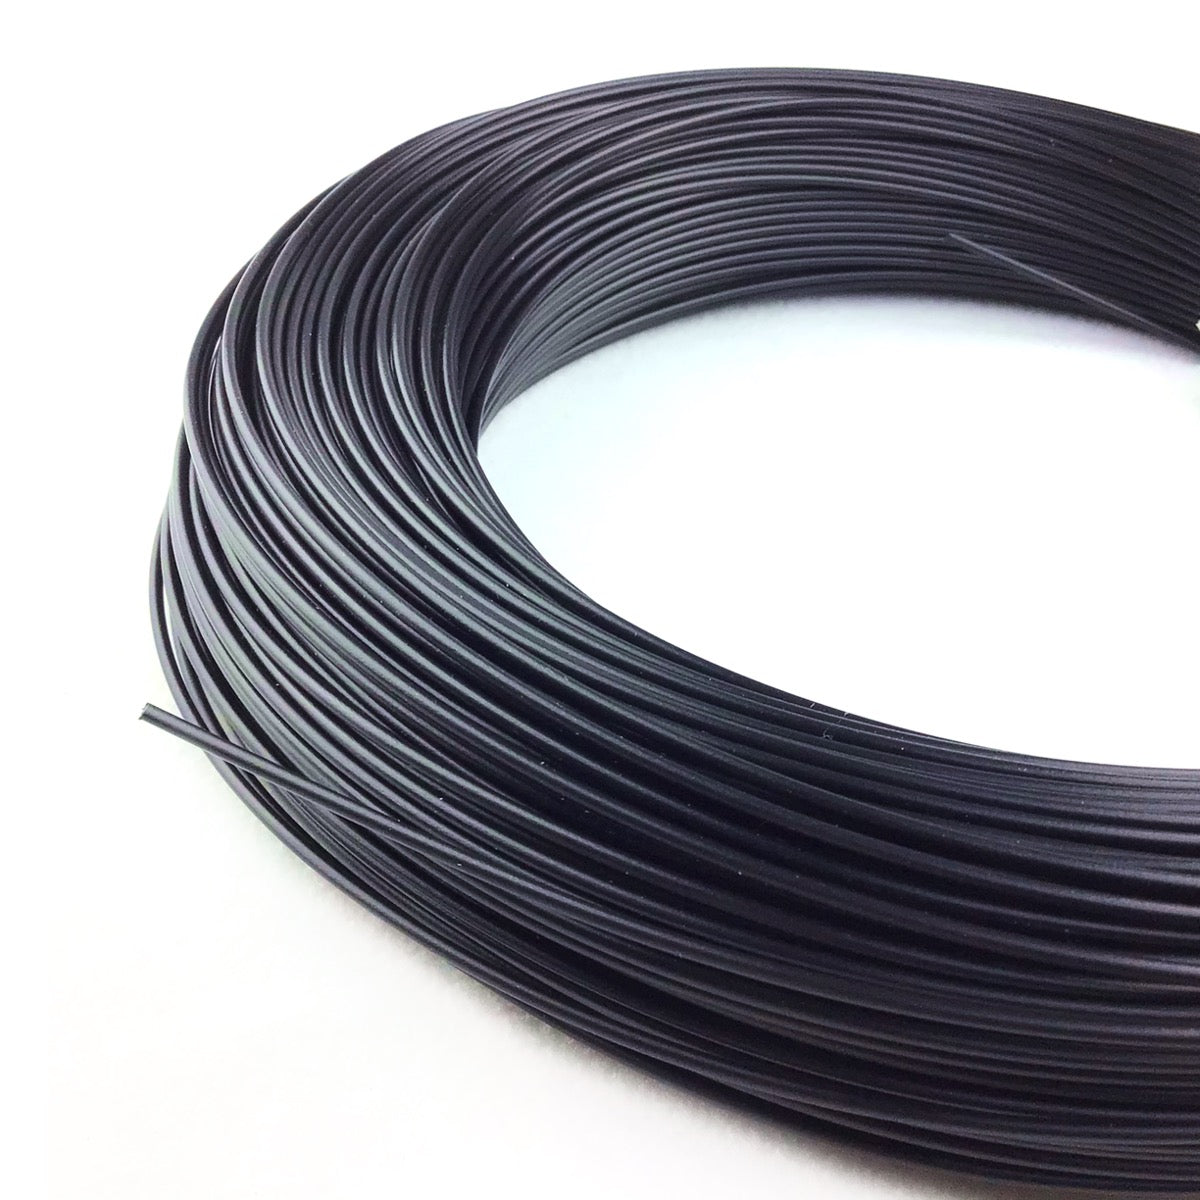 3DMakerWorld Premium PLA Filament - 1.75mm, 1lb, Black